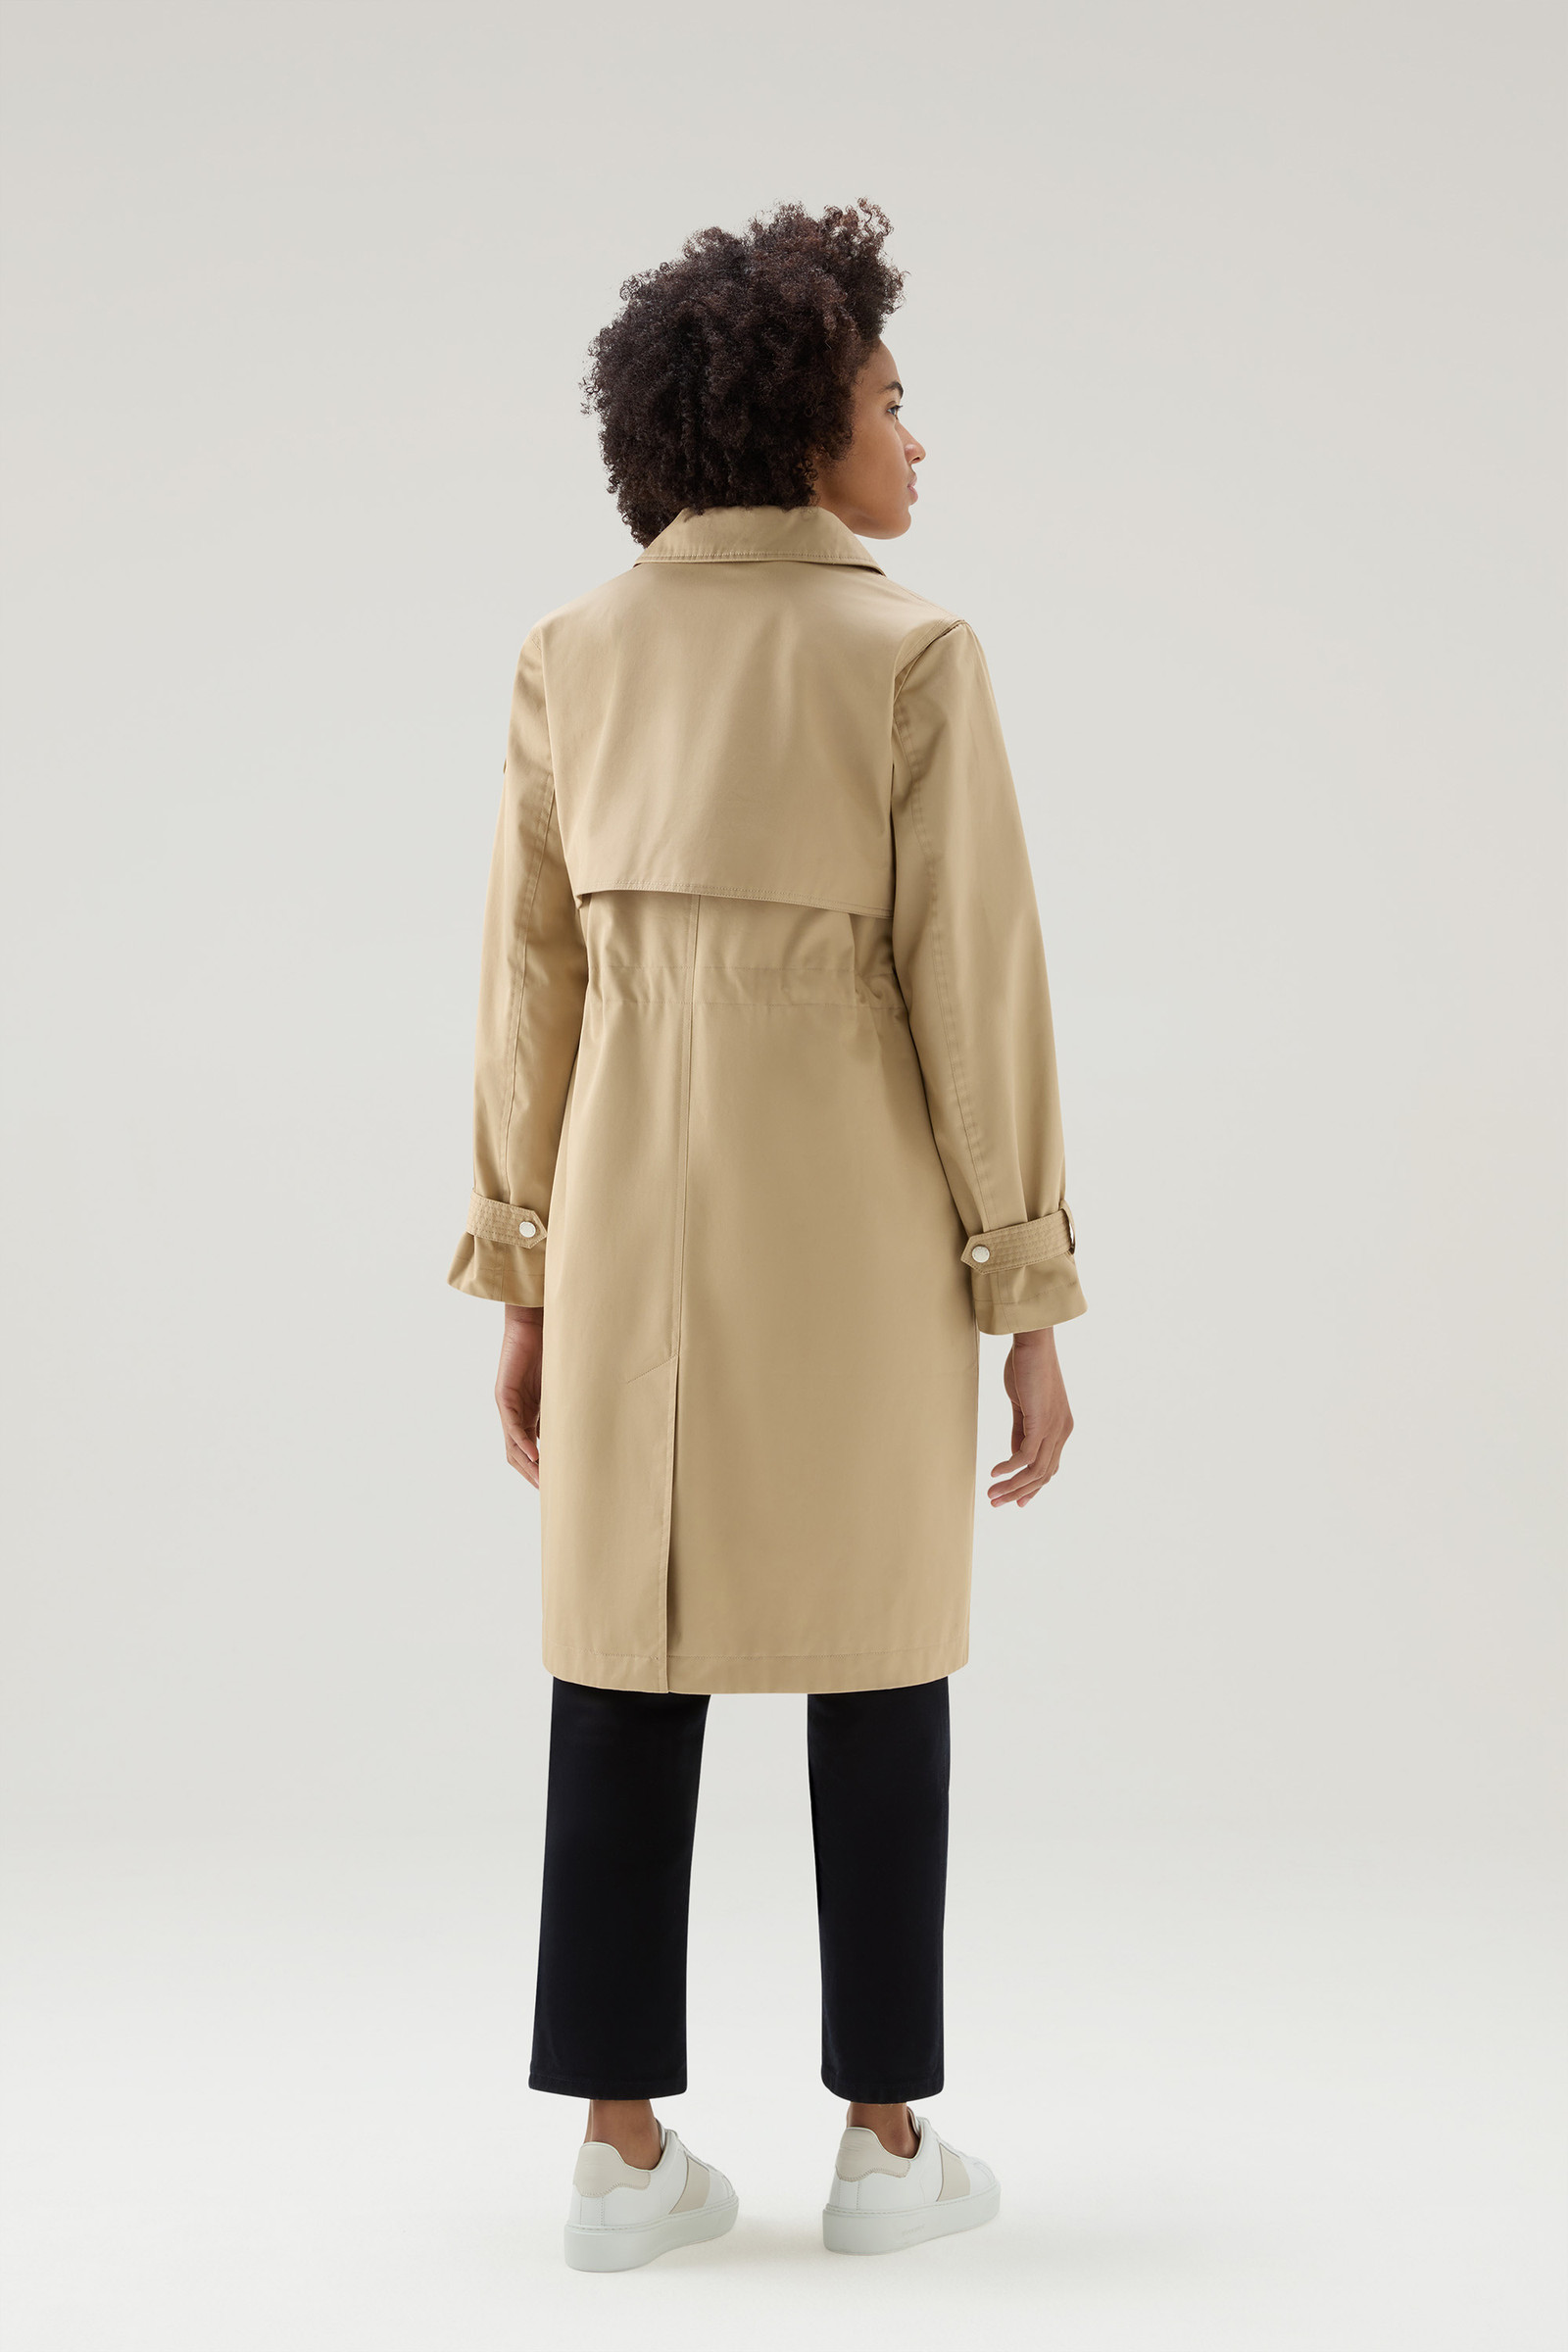 dynamisch pleegouders eerlijk Women's Havice Trench Coat in Pure Cotton Beige | Woolrich USA